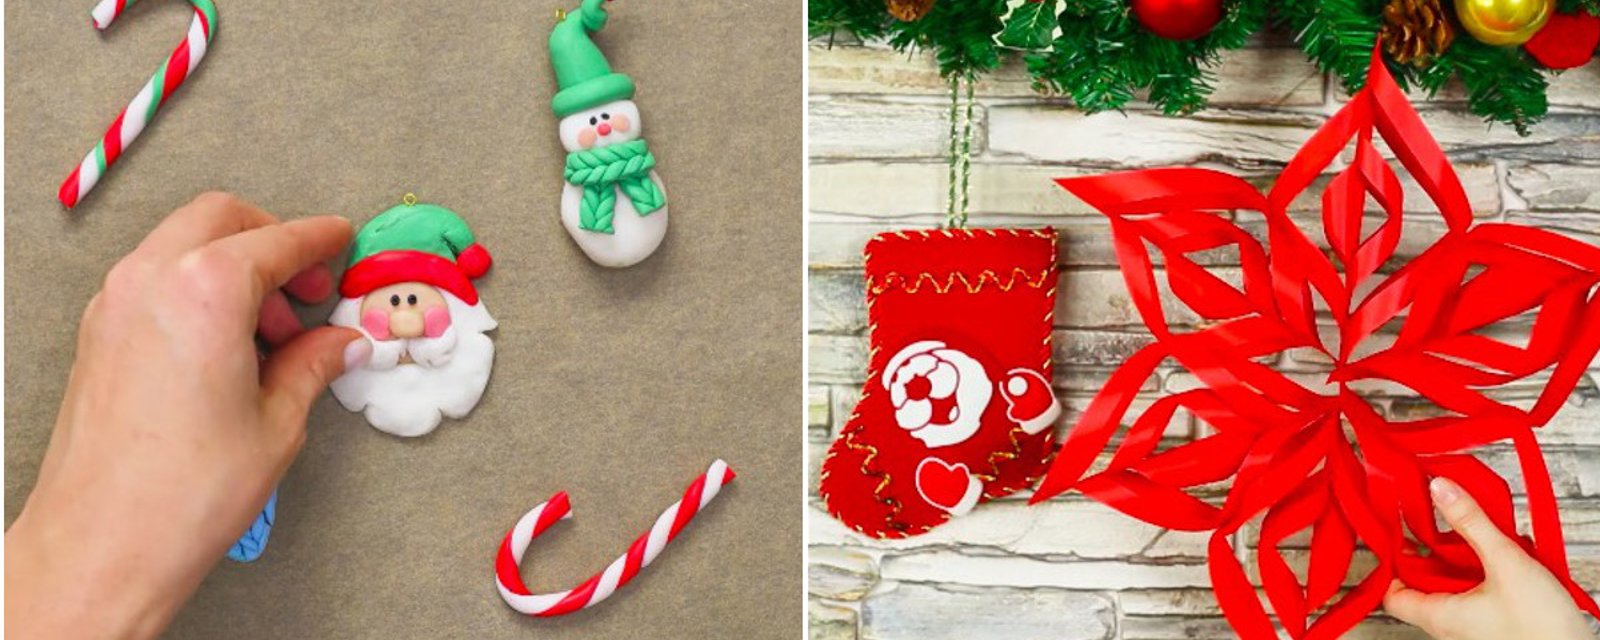 4 décorations de Noël qui vous rappelleront de beaux souvenirs d'enfance! 